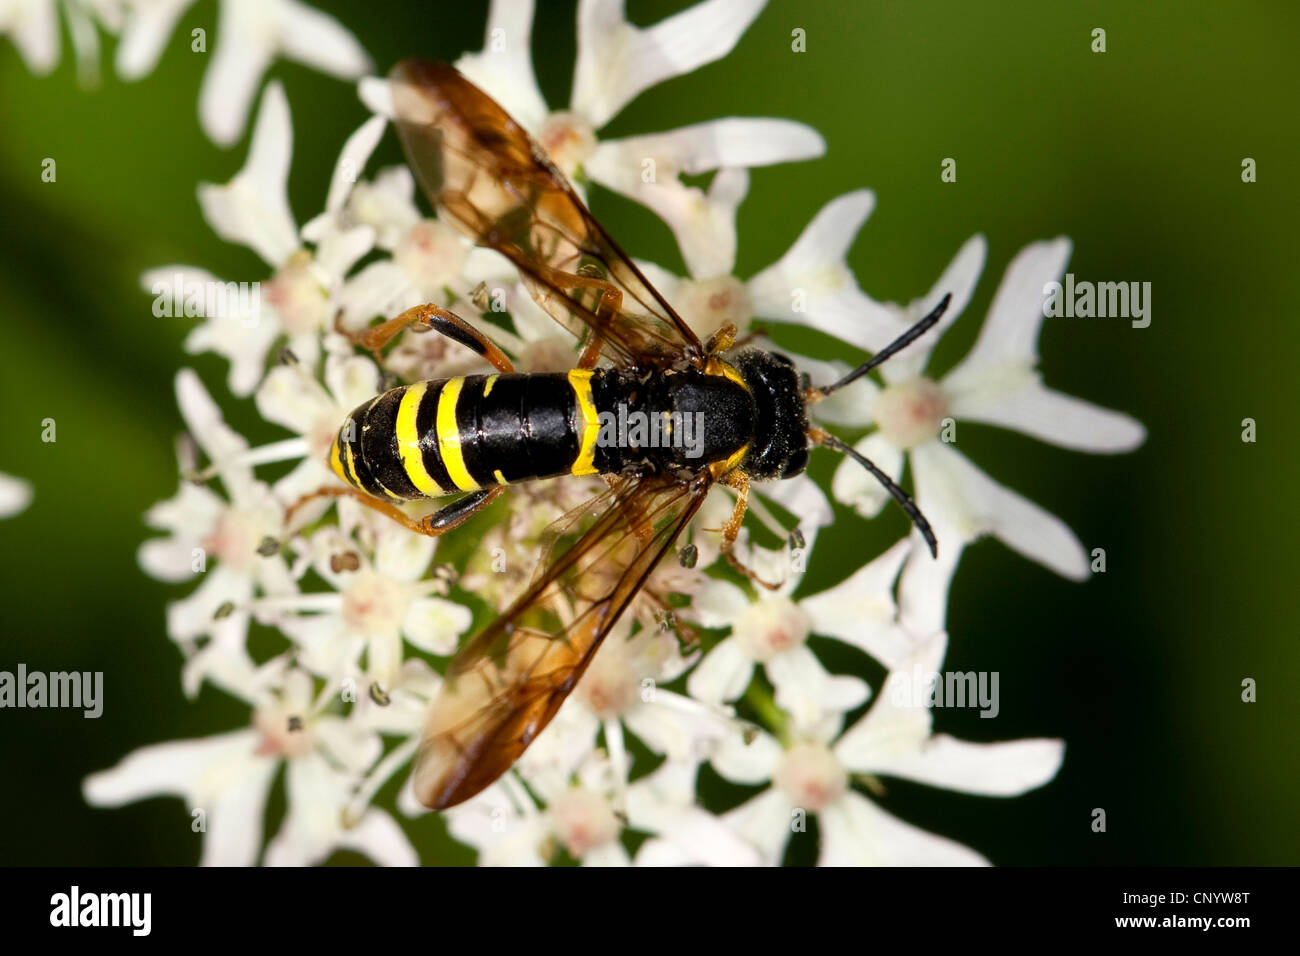 sawfly (Tenthredo spec), sitting on white flowers, Germany Stock Photo